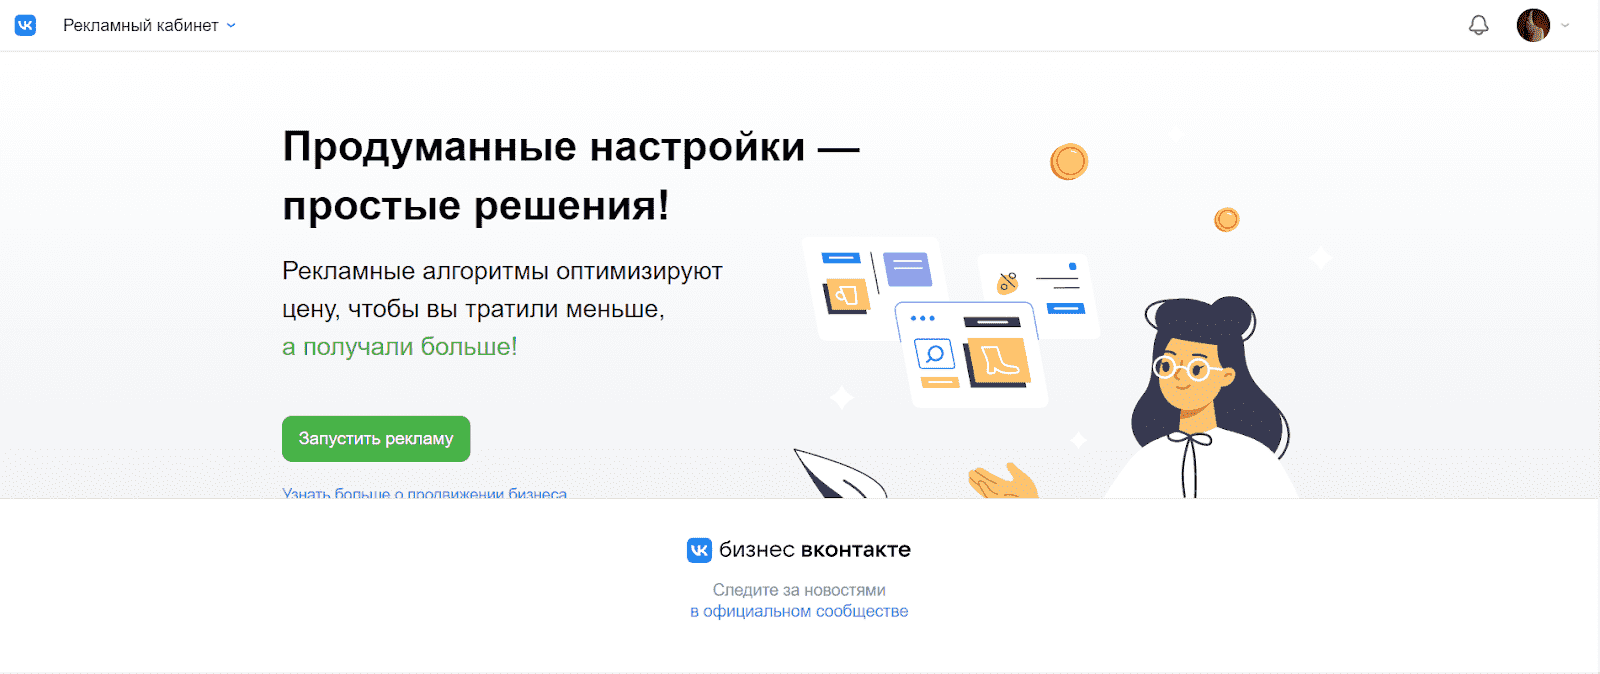 Вход в РК Вконтакте